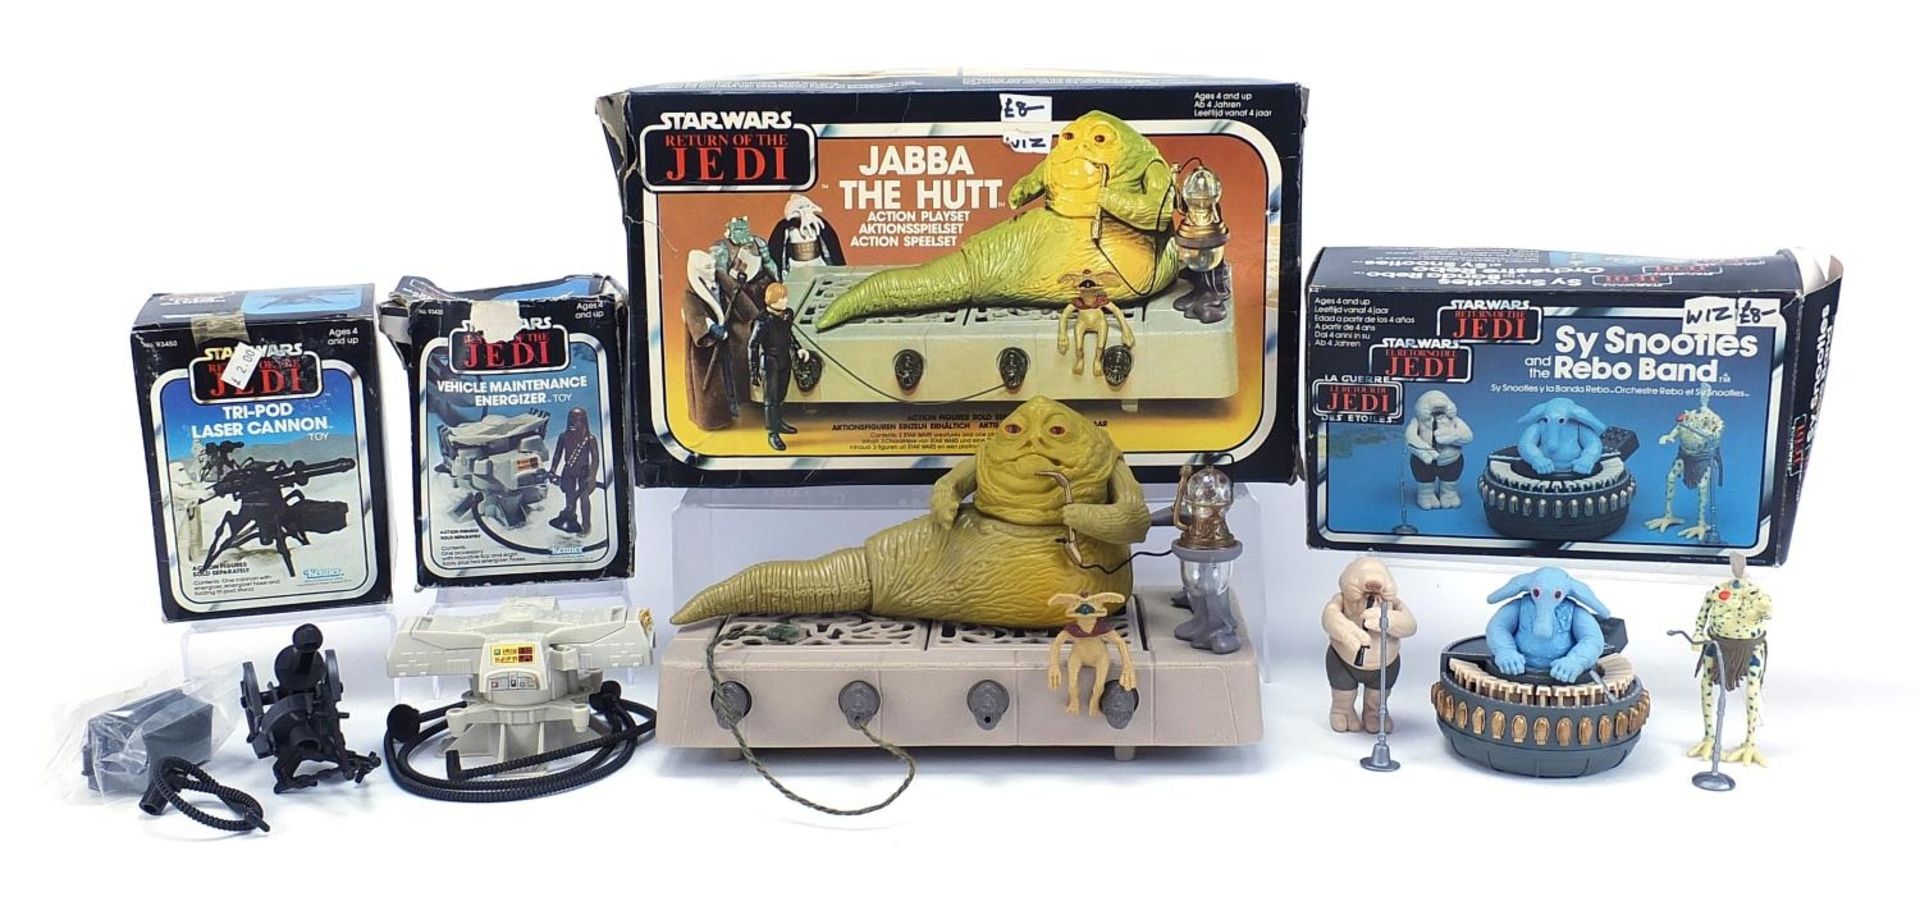 Vintage Star Wars Return of the Jedi action figure sets including Kenner comprising Jabba the